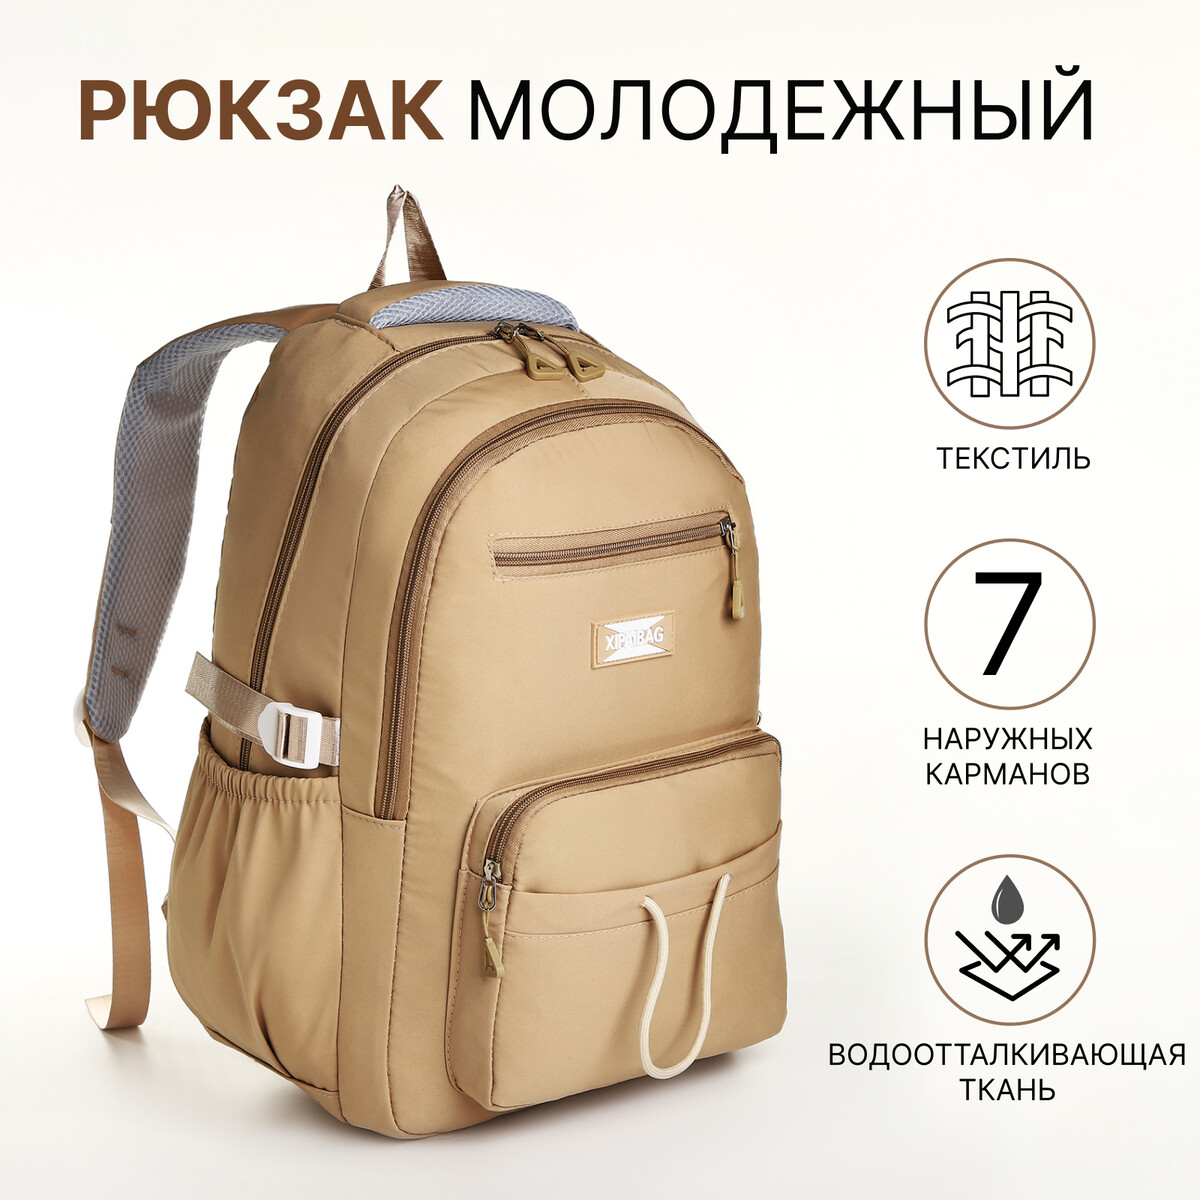 Рюкзак школьный из текстиля на молнии, 7 карманов, цвет коричневый рюкзак nuovita capcap via marrone коричневый